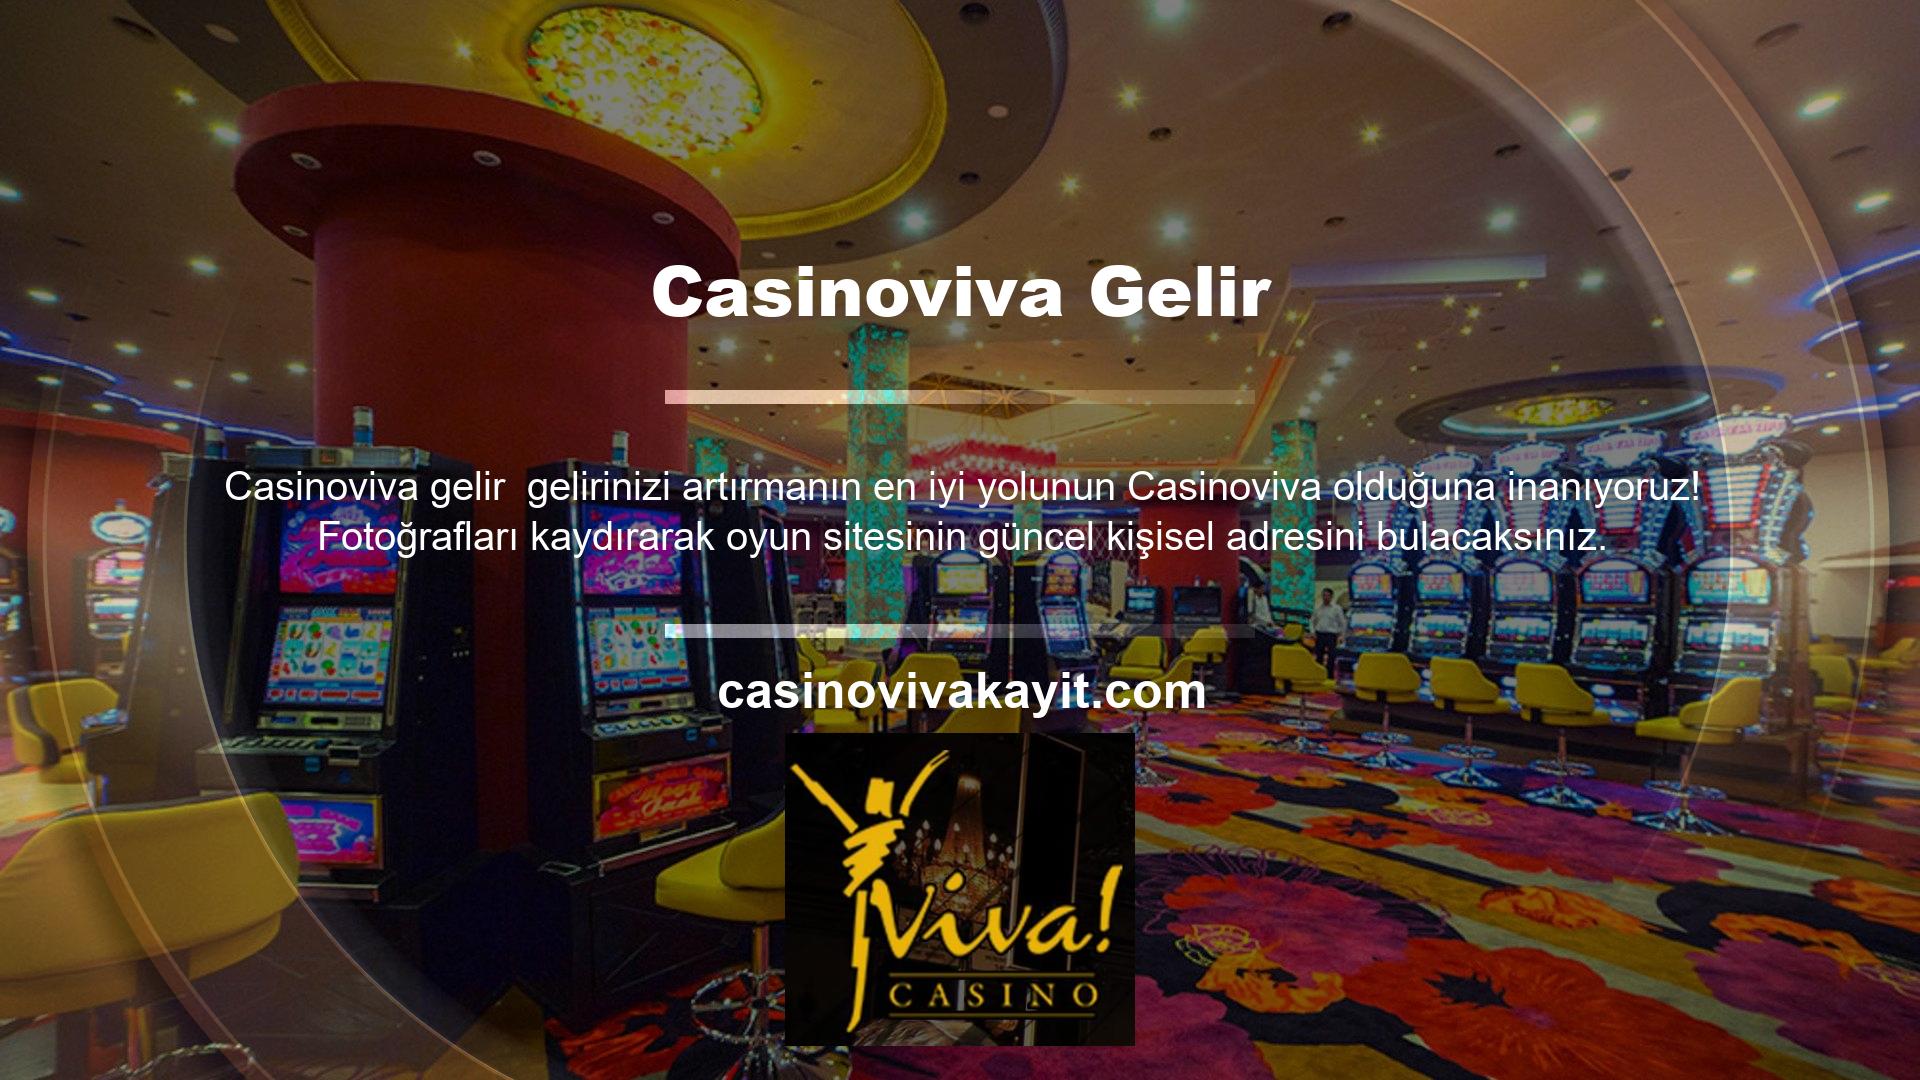 Fotoğrafın altındaki "Casinoviva mevcut giriş adresi" seçeneğini tıklayın ve mevcut giriş adresinizi girin